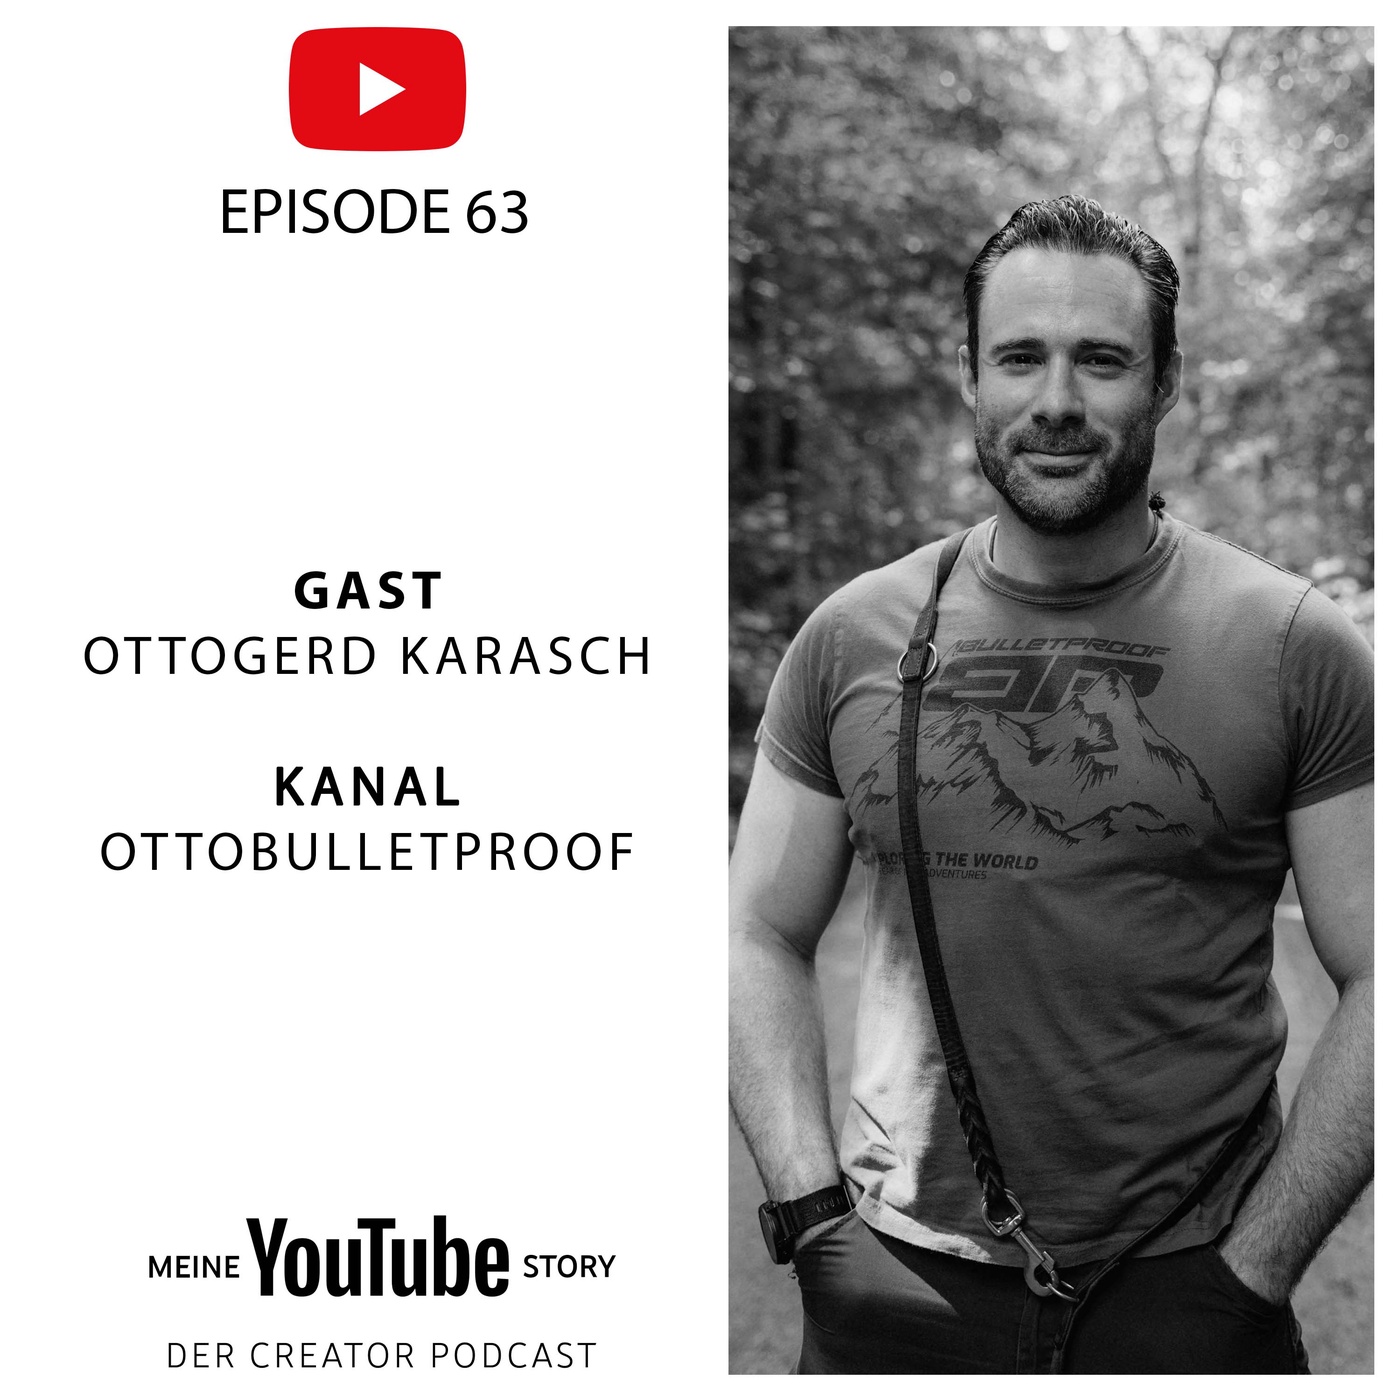 Otto Bulletproof: Vom Elitesoldat zum Abenteuer-Creator mit 75 Mio. YouTube-Views